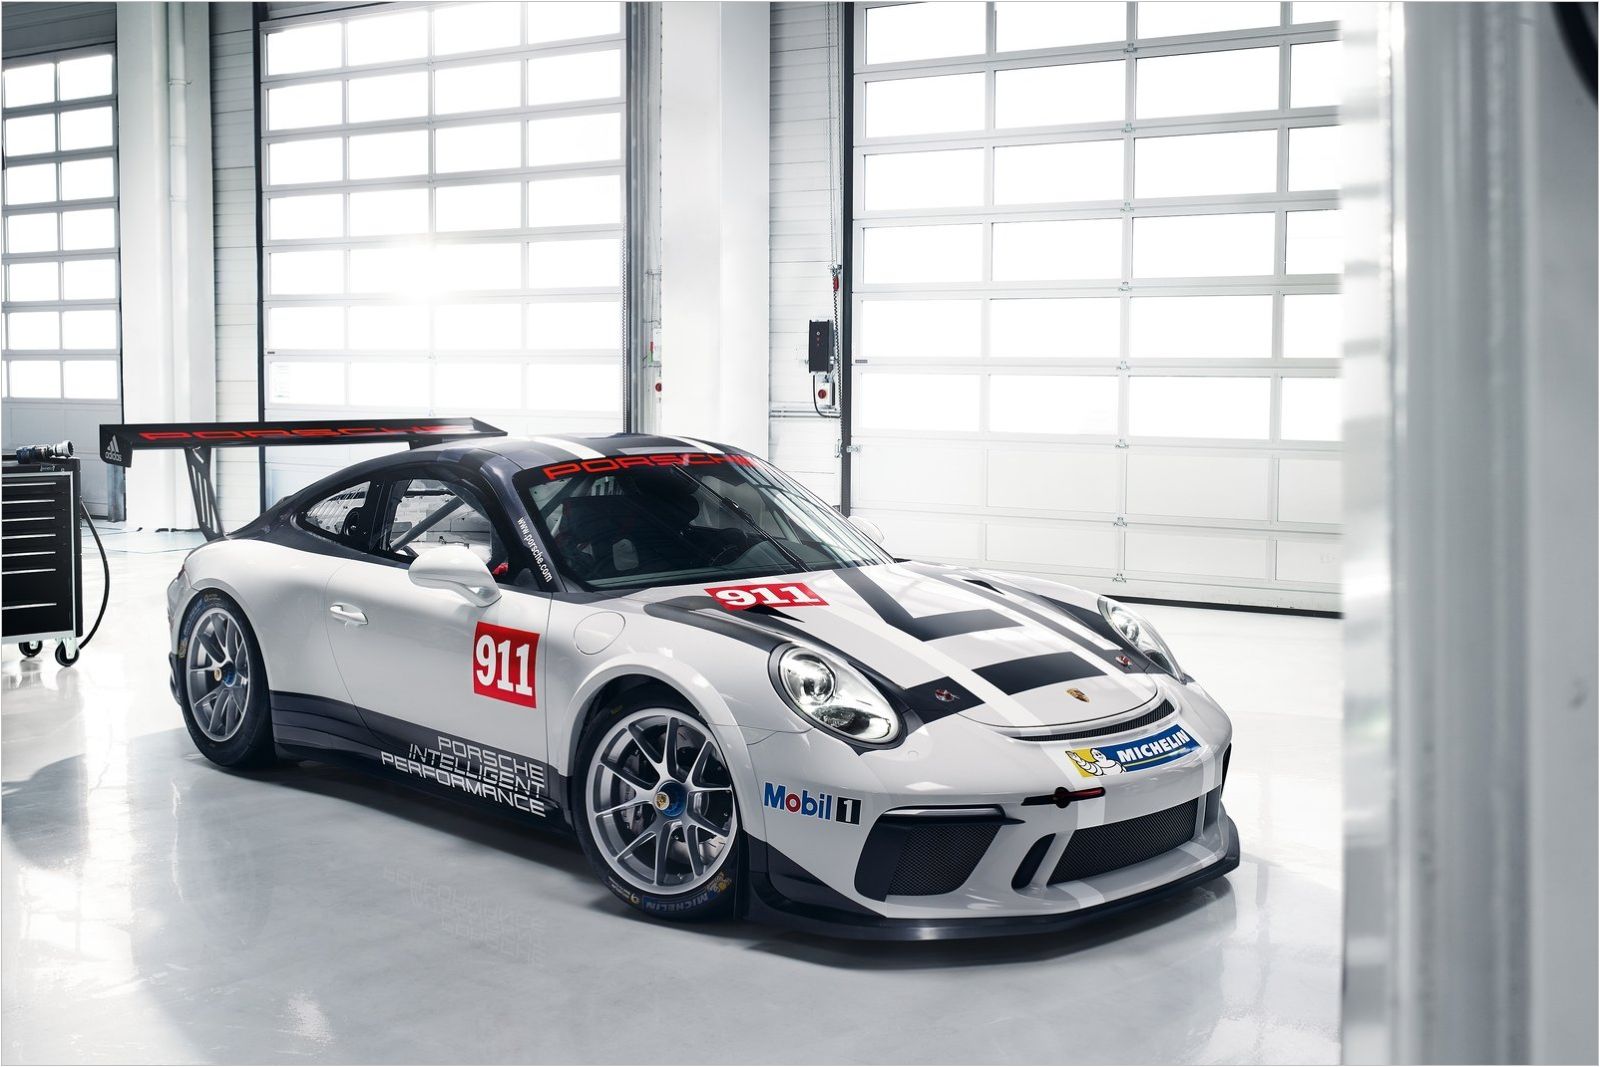 Porsche 911 GT3 Cup, 1600x1067px, img-4